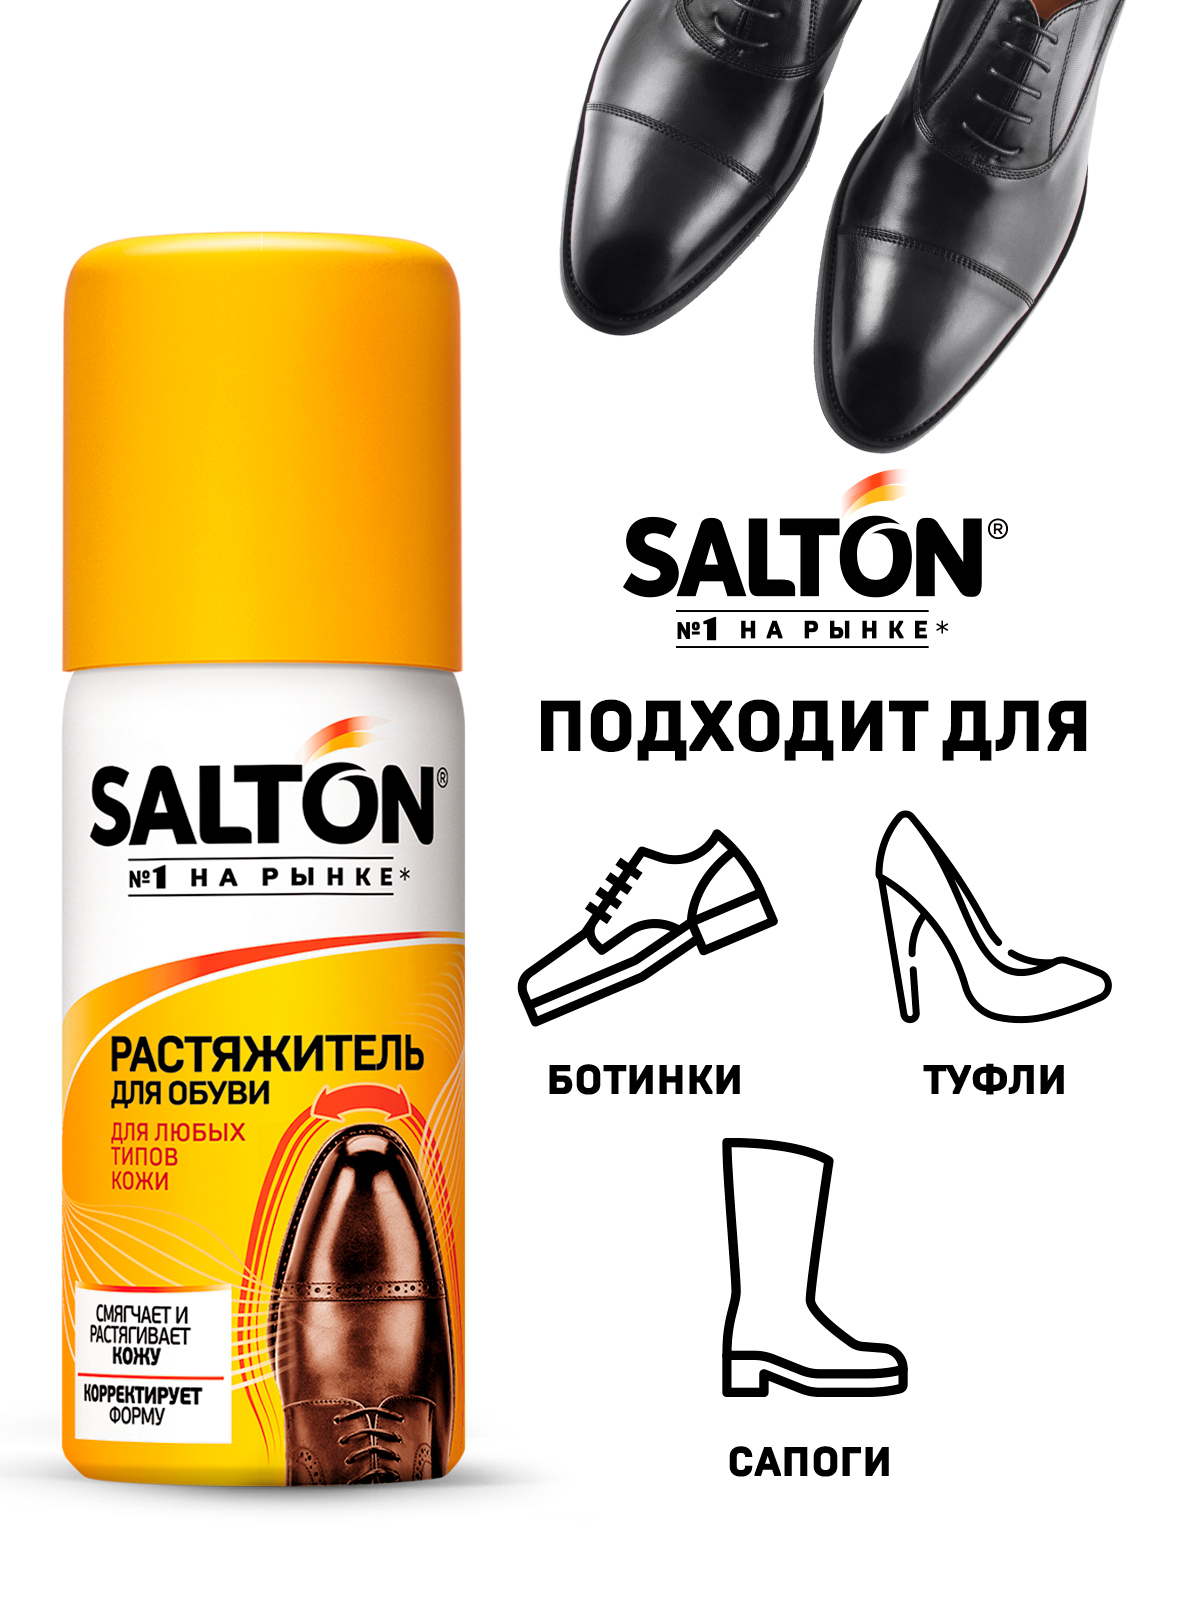 Салтон растяжитель для обуви